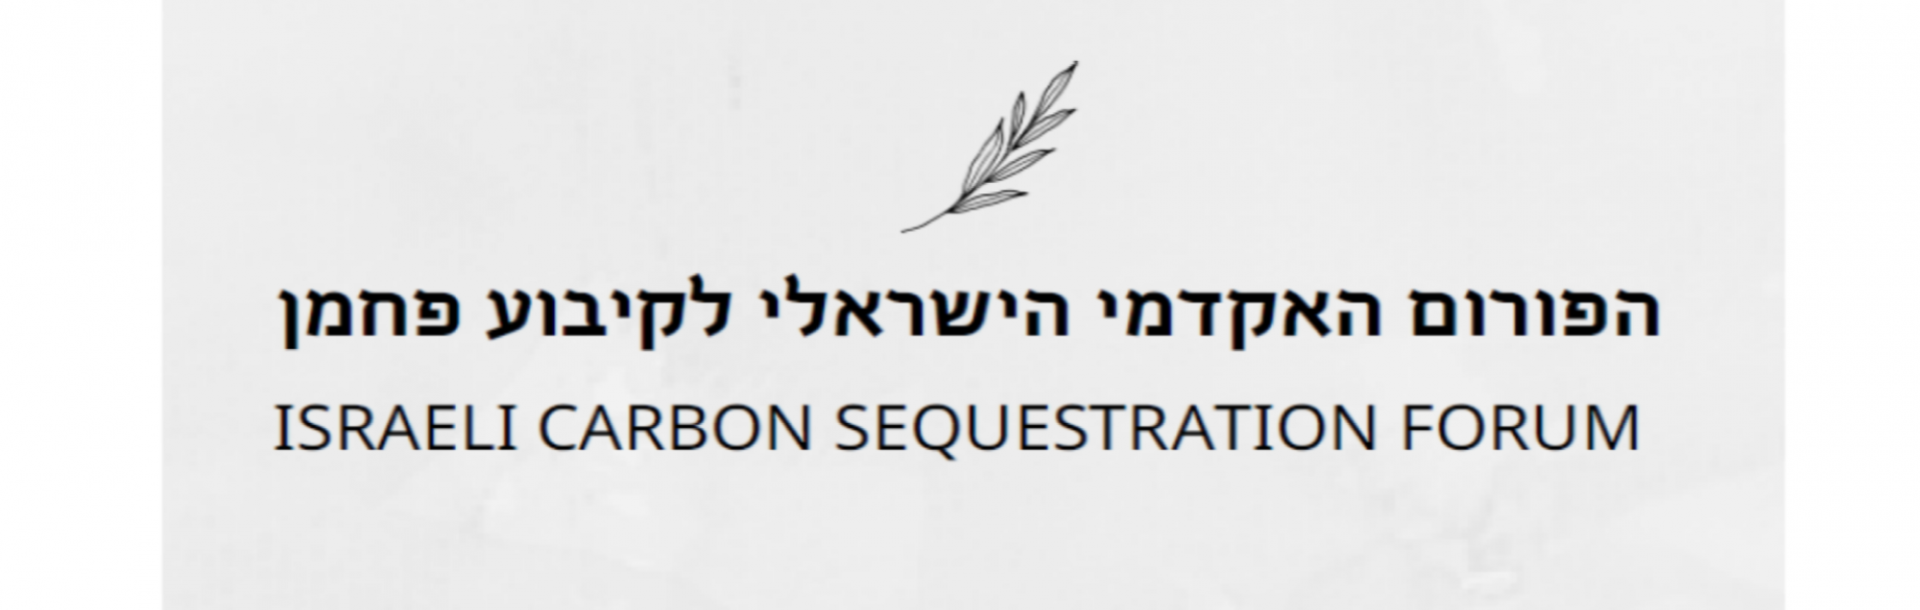 הזמנה לחוקרות וחוקרים מתחומי הידע השונים להצטרפות לפורום האקדמי הישראלי לקיבוע פחמן